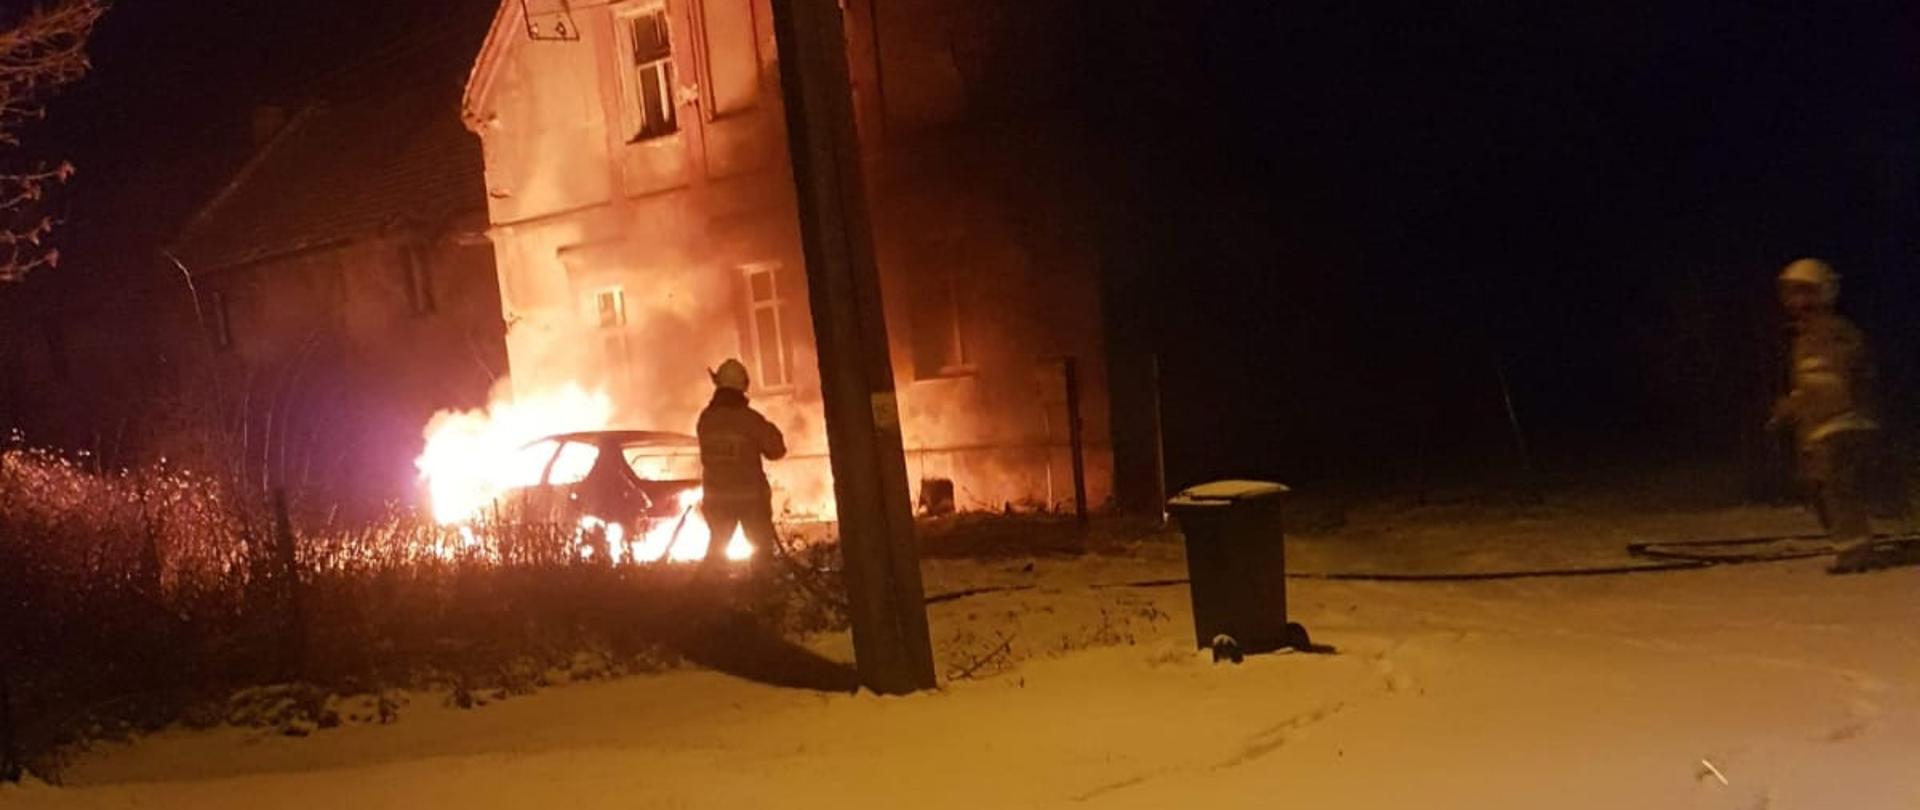 Pożar samochodu osobowego w miejscowości Czeska Wieś